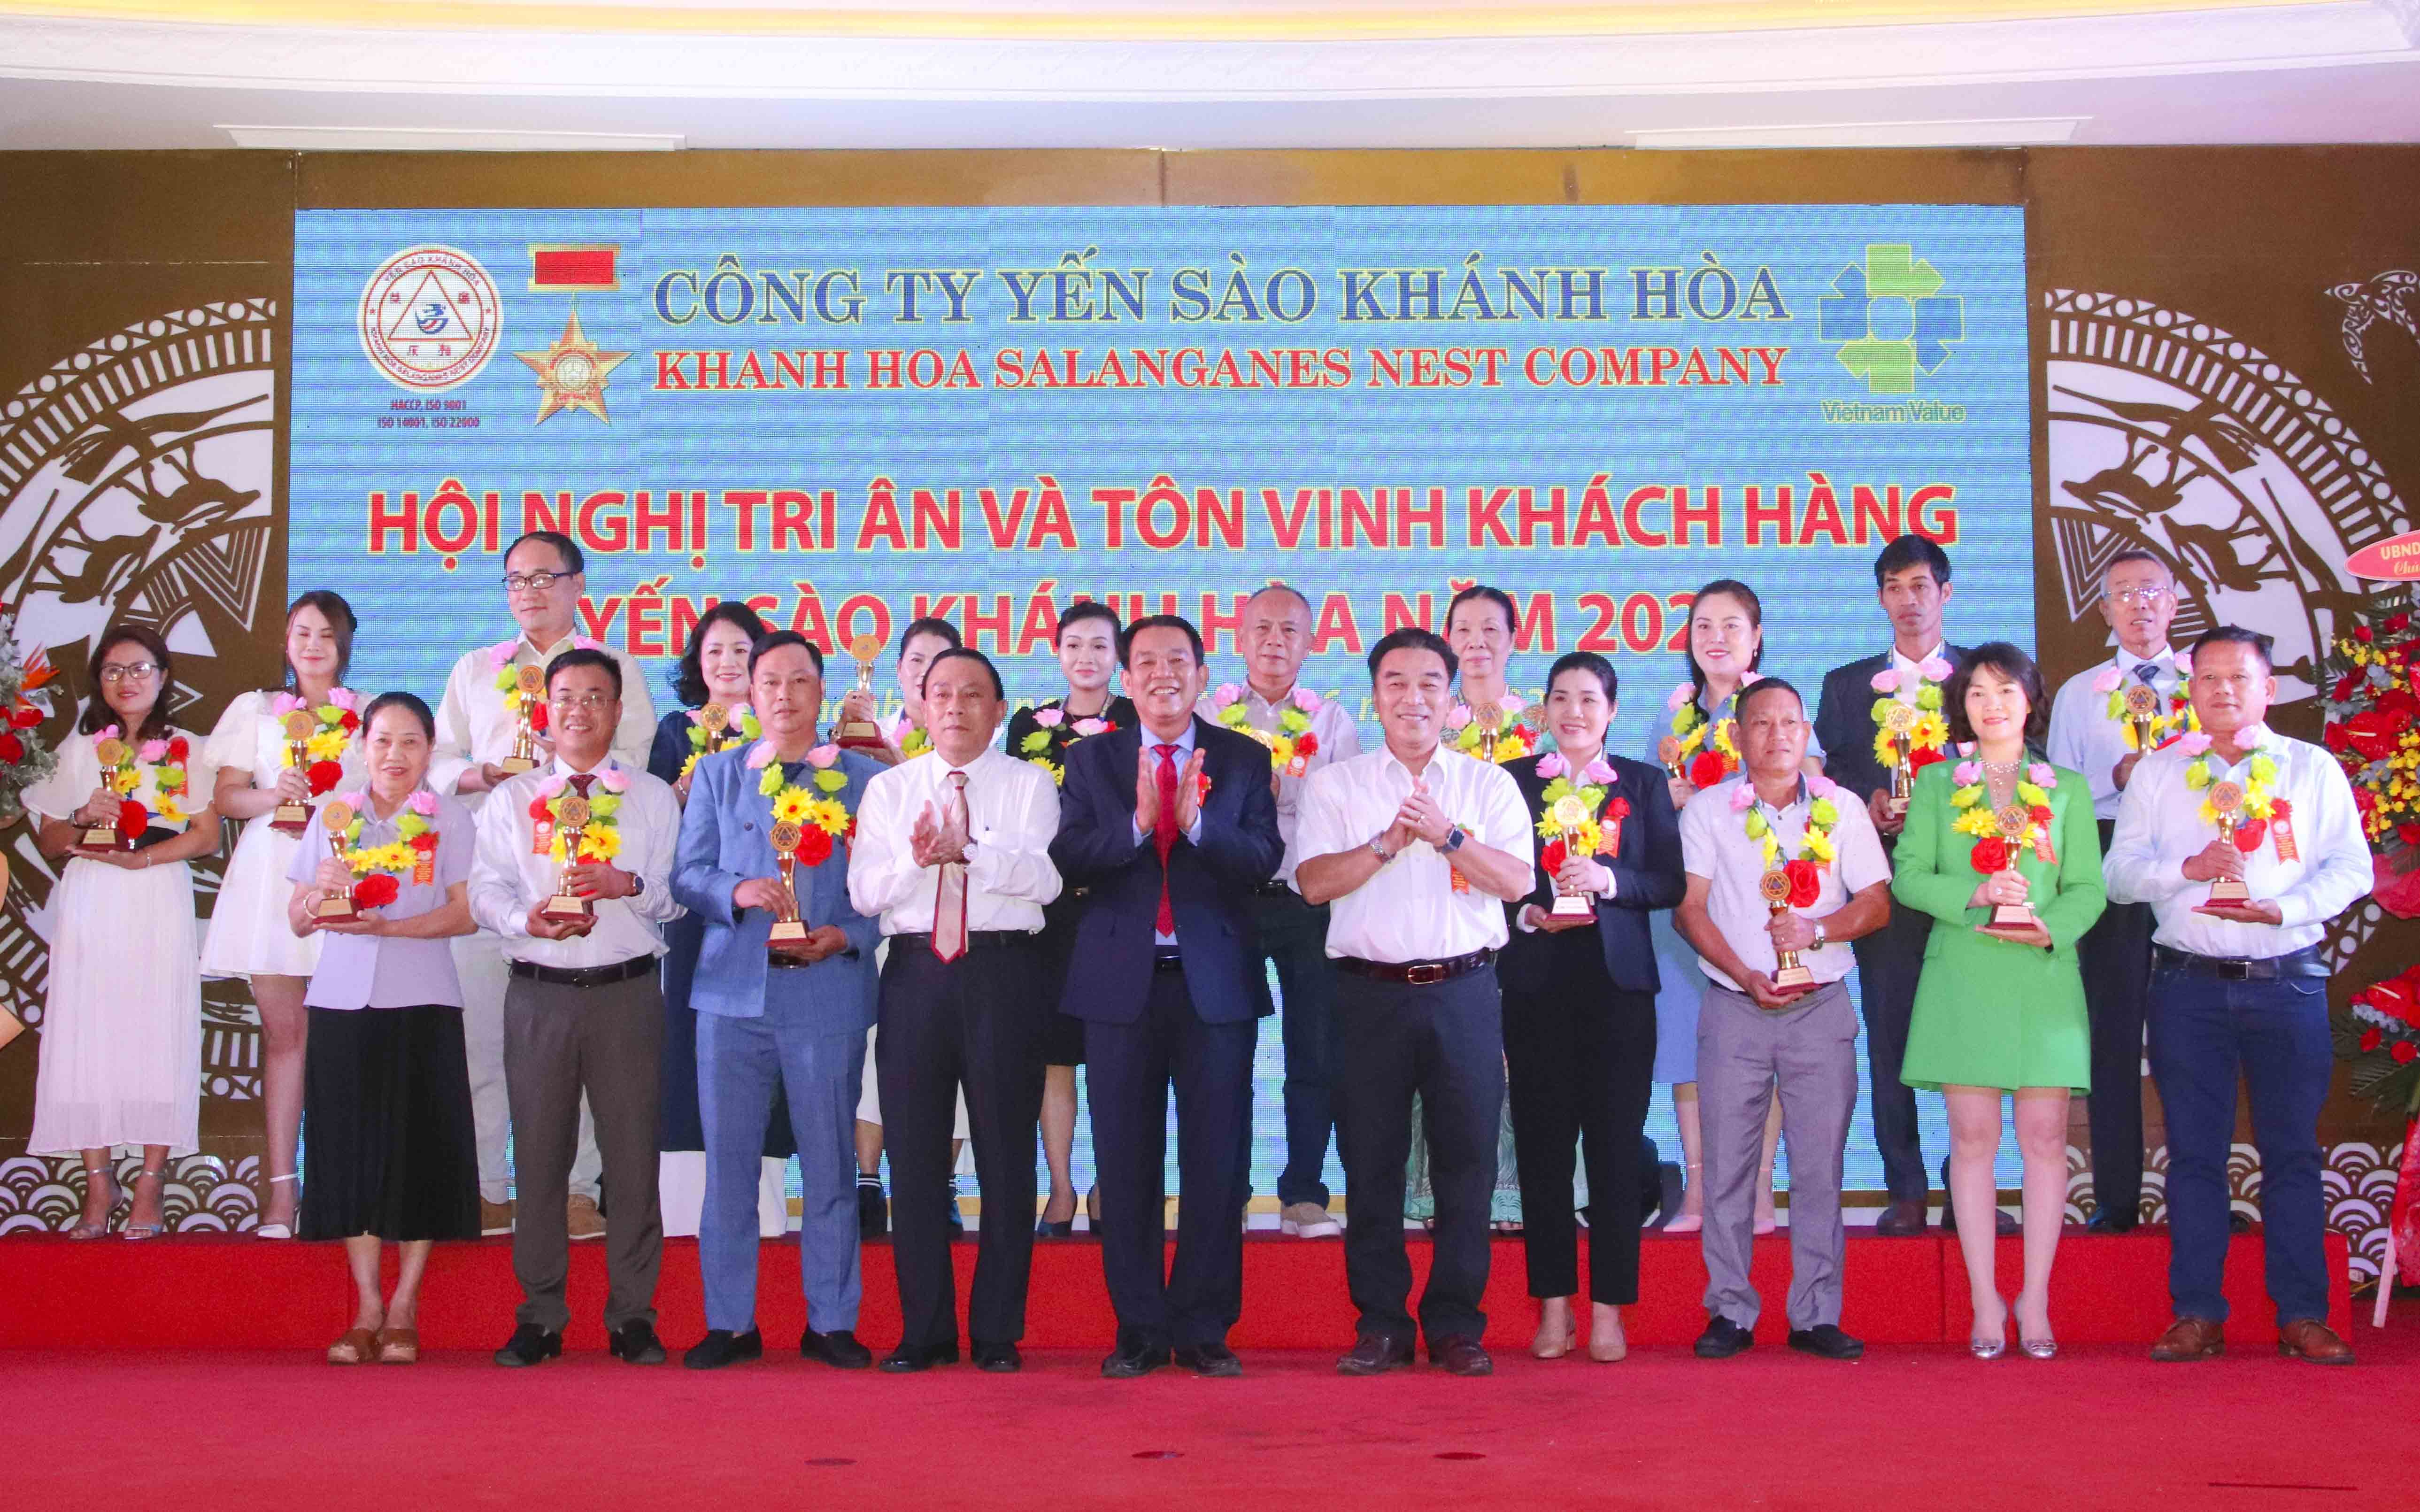 Vinh danh 128 đại lý, nhà phân phối sản phẩm yến sào Khánh Hòa